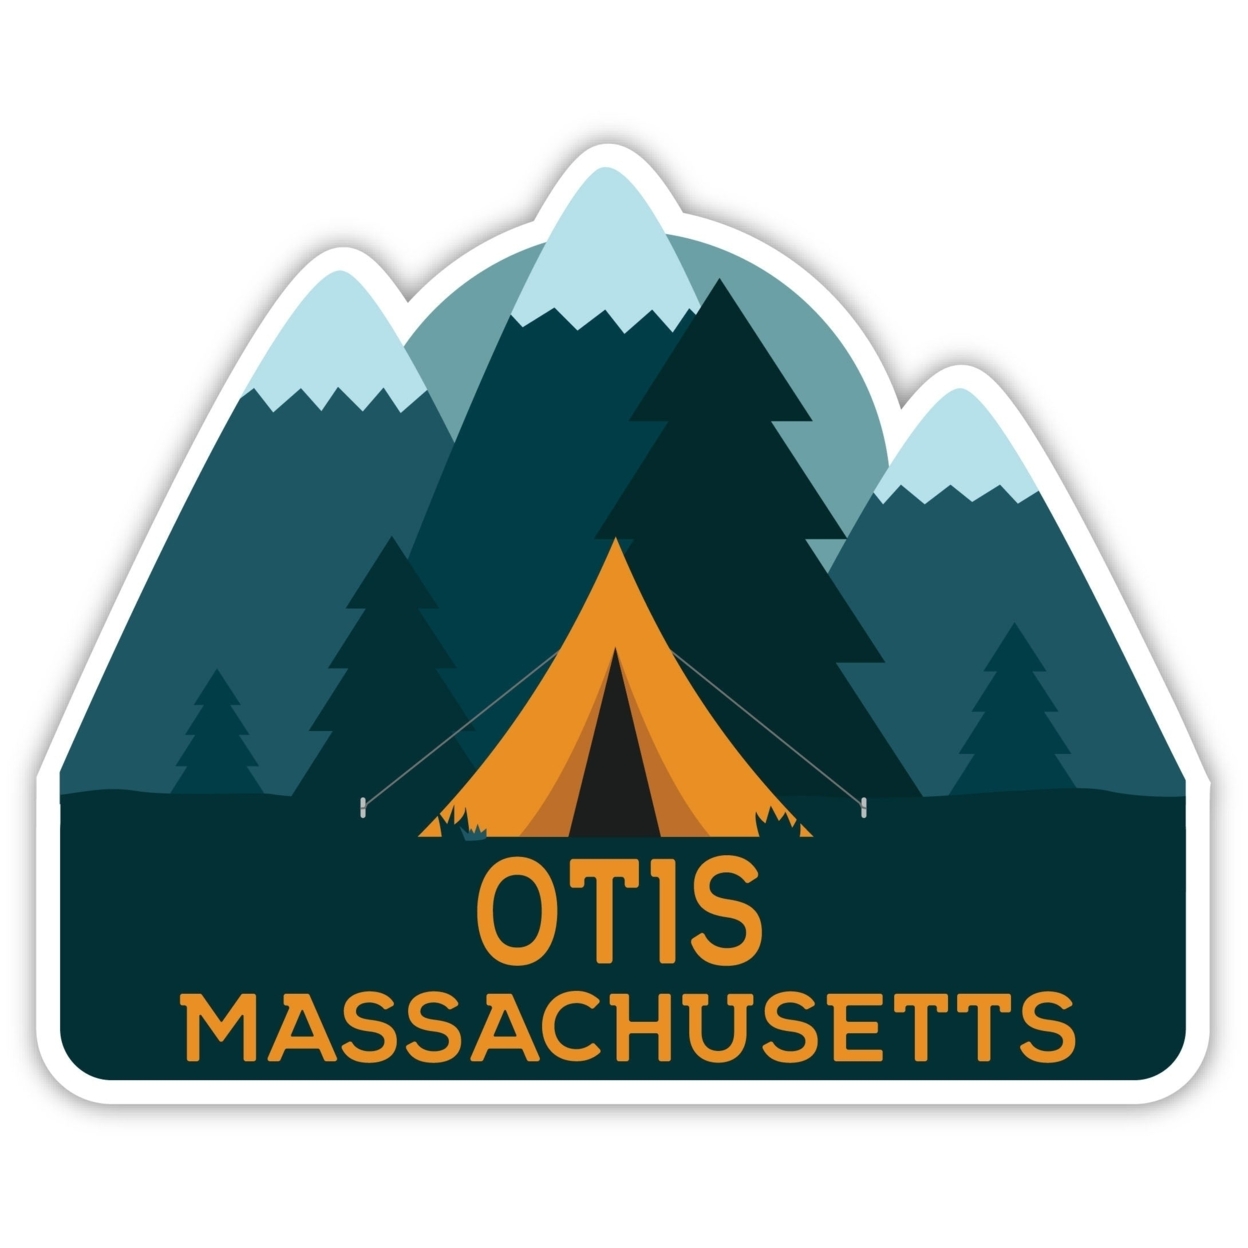 Otis Massachusetts Souvenir Decorative Stickers (Choose Theme And Size) - Single Unit, 4-Inch, Tent